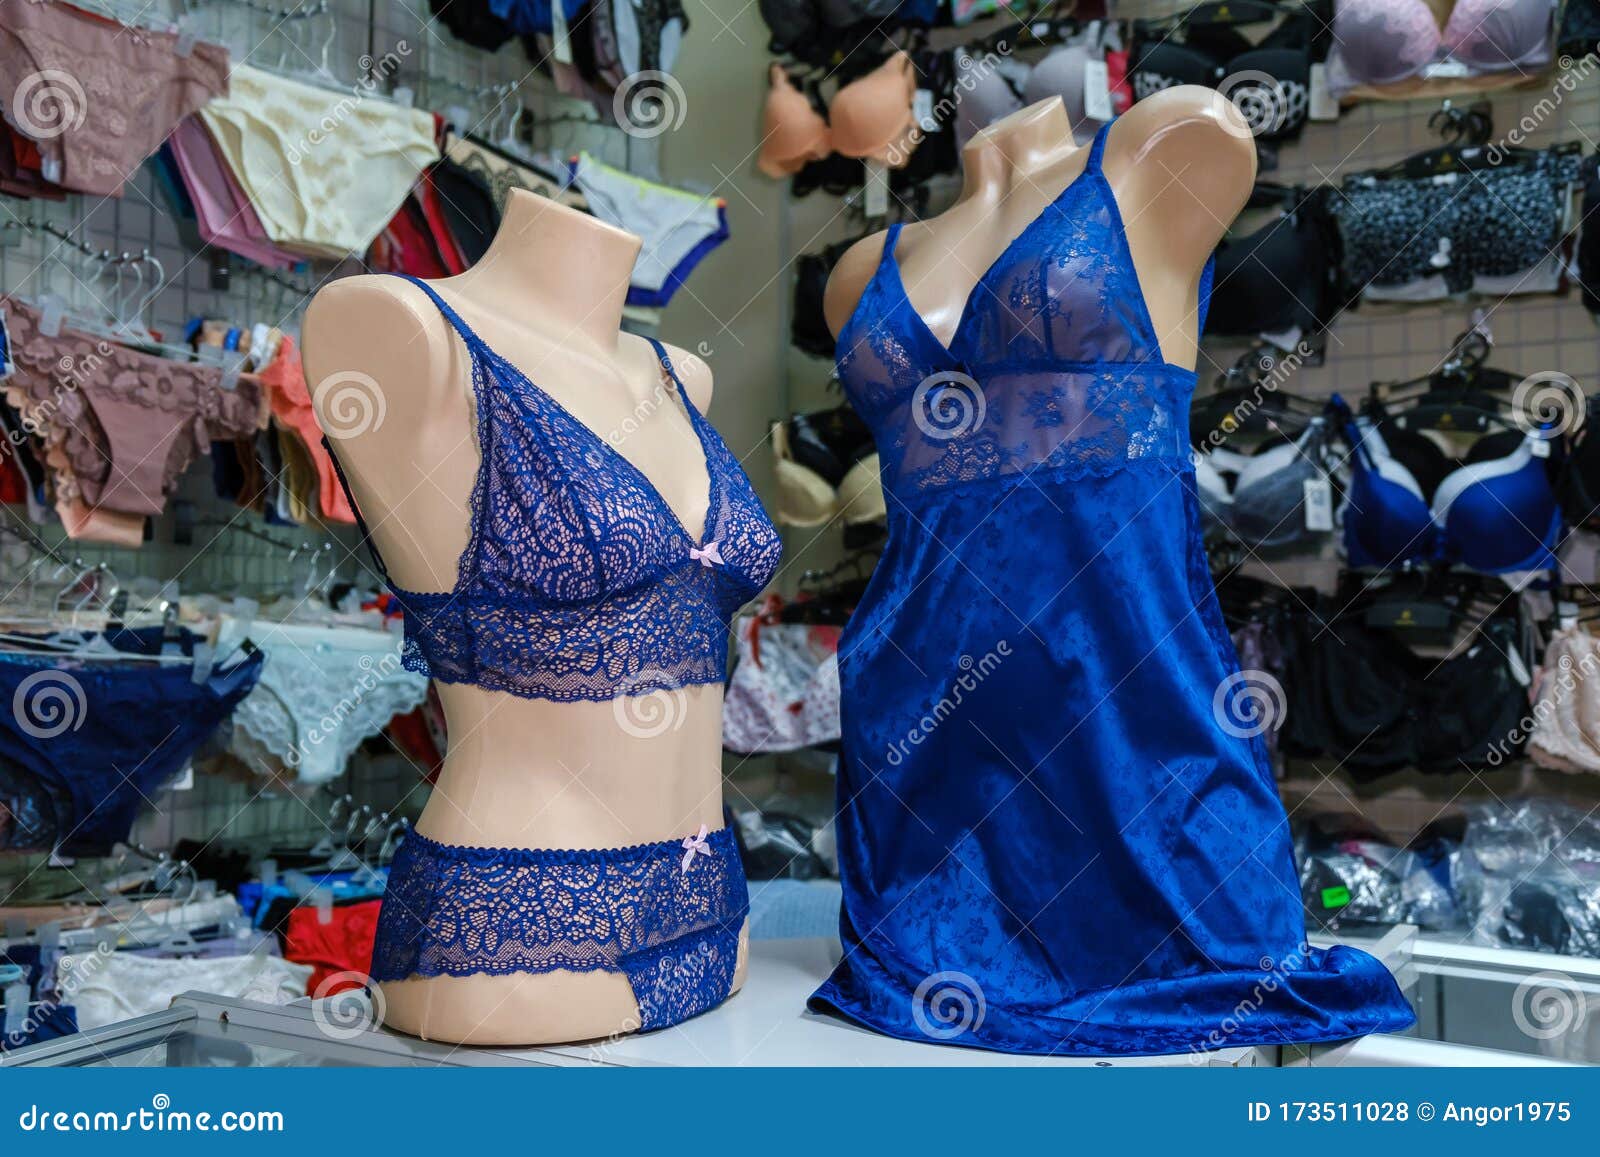 Christchurch chupar Adaptar Dos Maniquíes Vestidos Con Ropa Interior De Mujeres De Encaje Azul En Una  Tienda De Lencería Foto de archivo - Imagen de ropa, hembra: 173511028